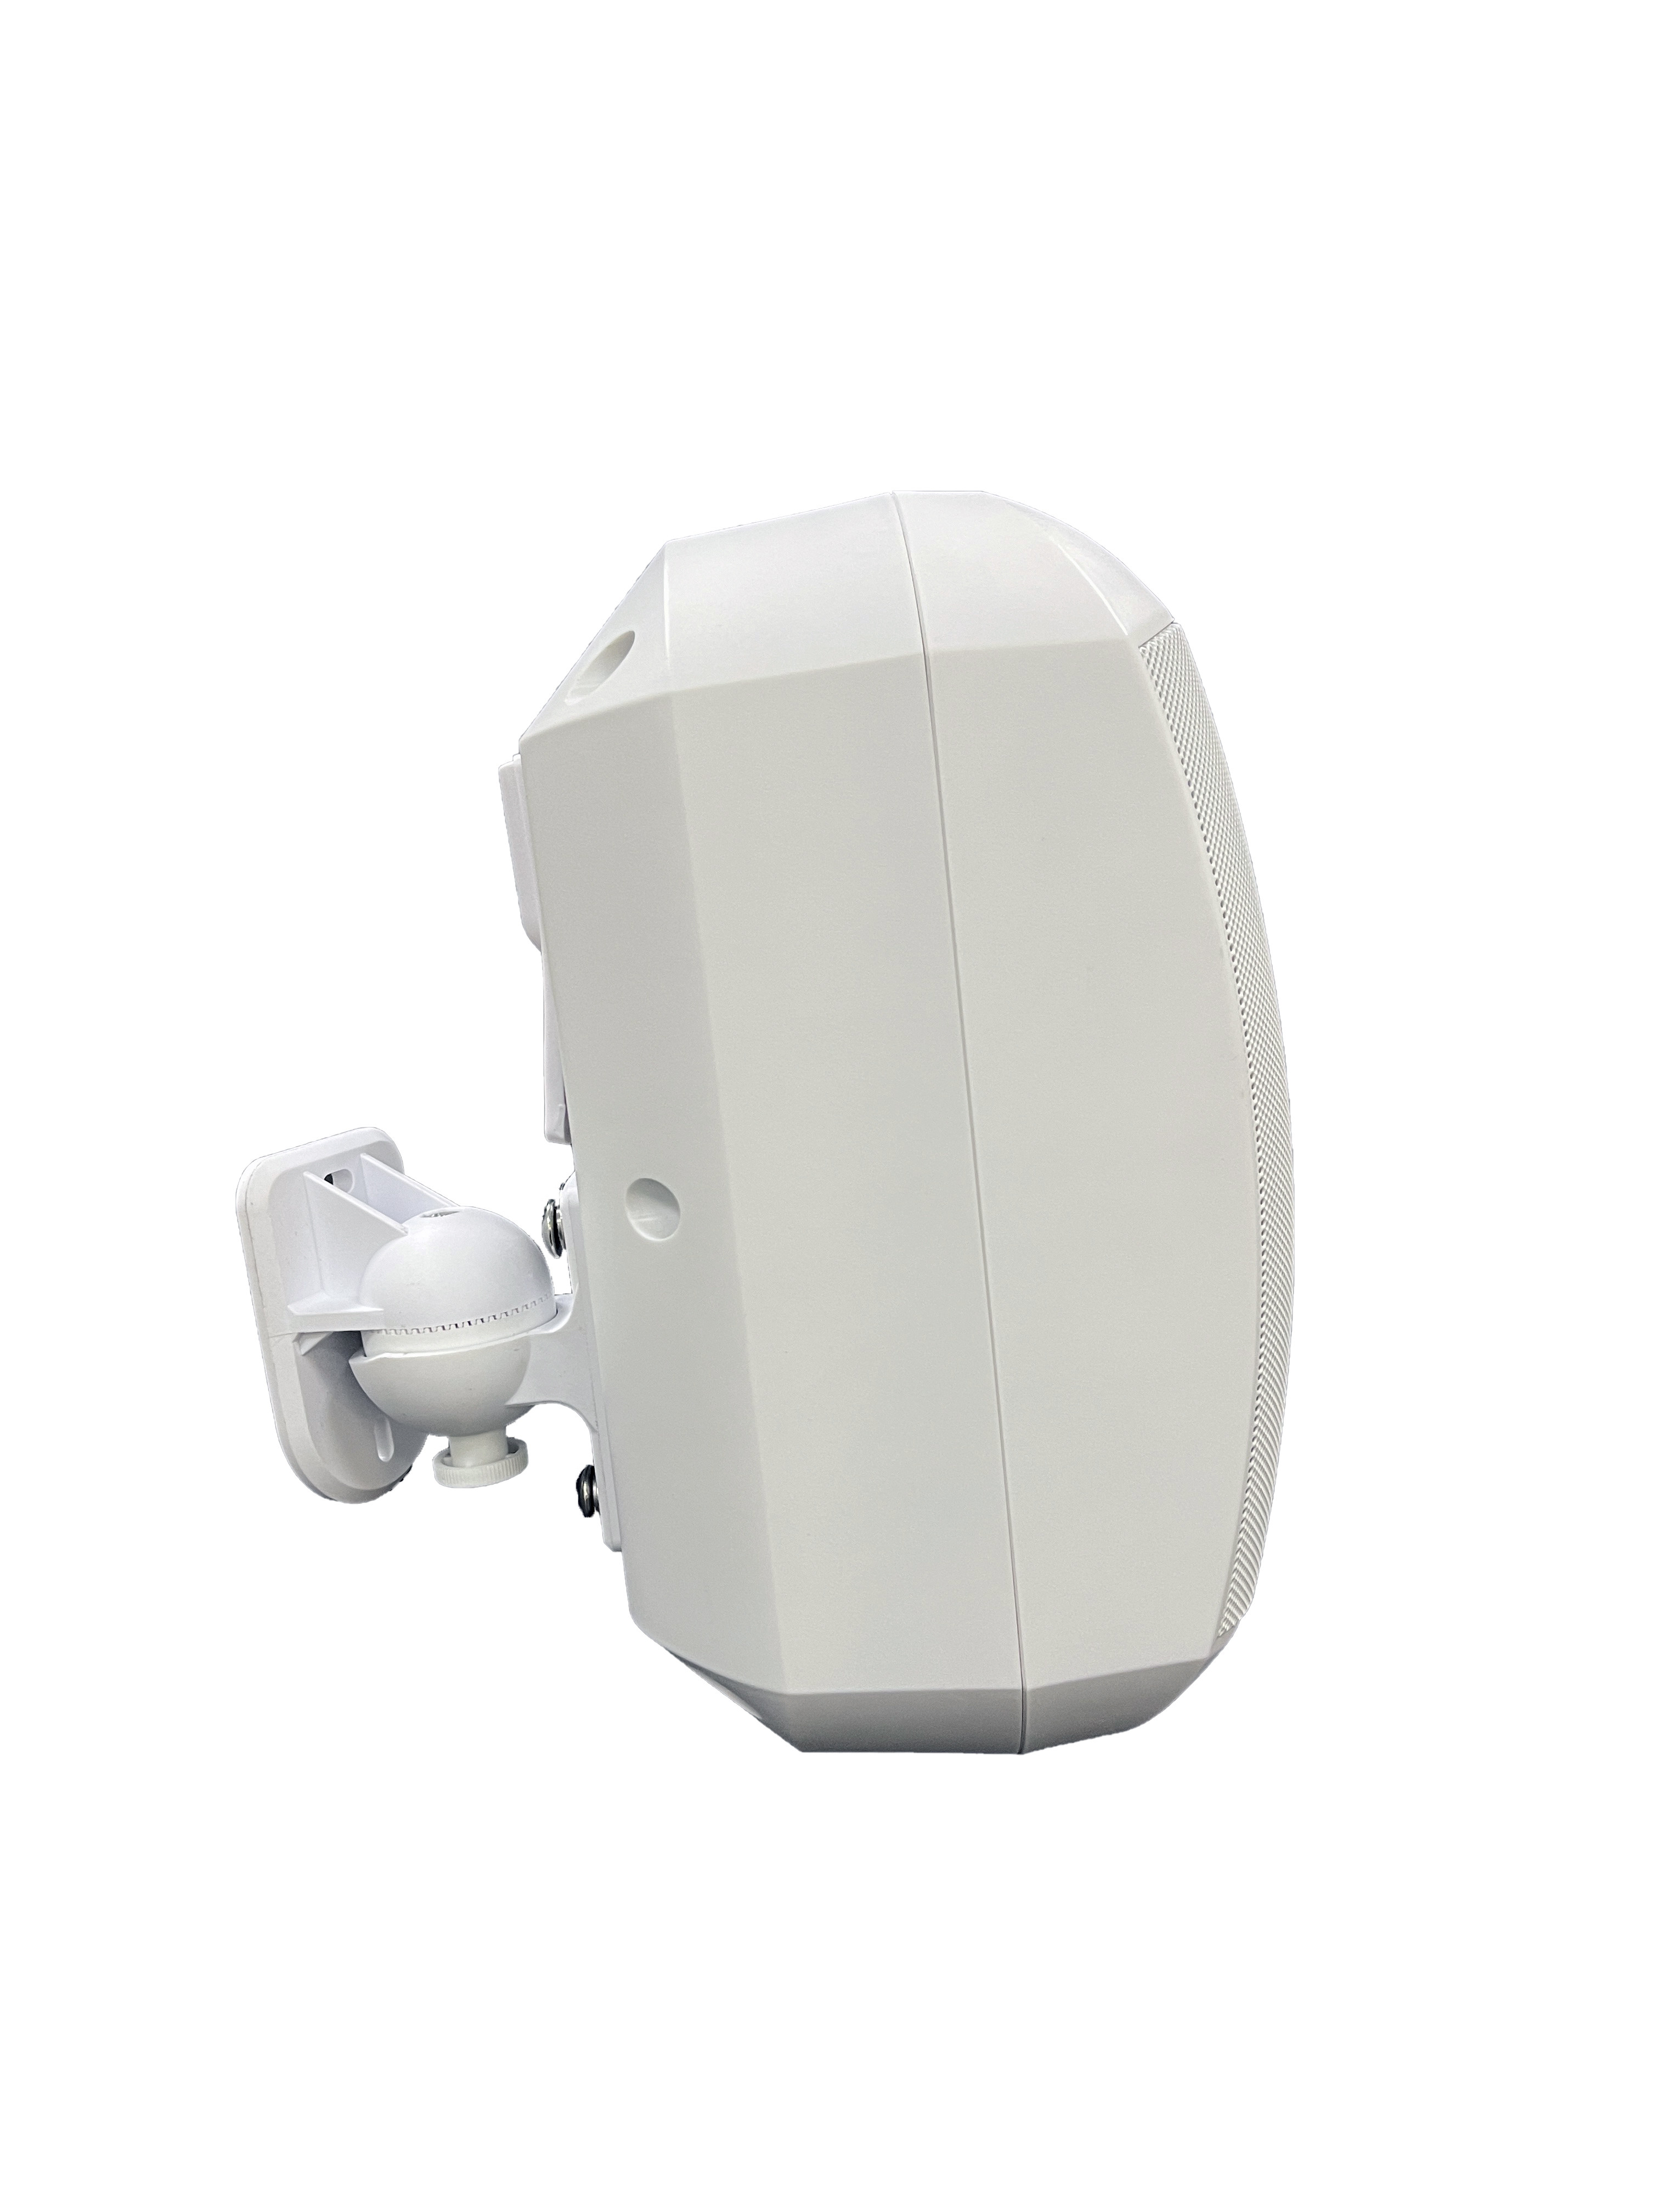 FWS-620W 4.5 inch 20W Outdoor Waterproof Wall Mount Speaker